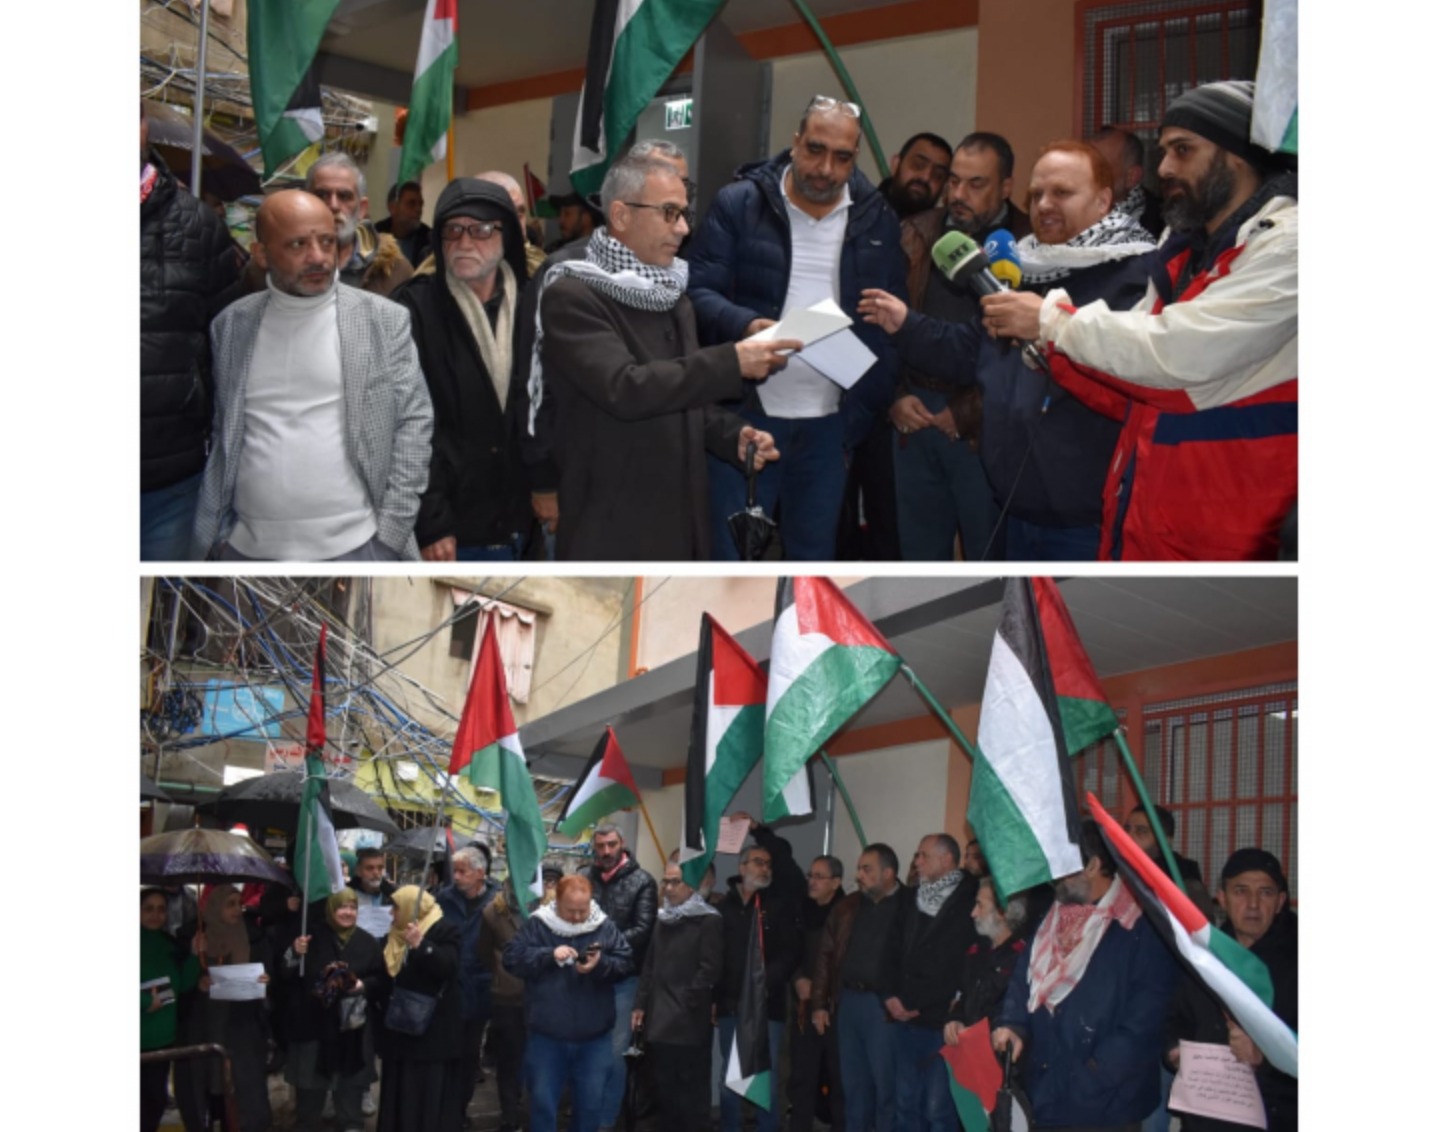 فعالية لفصائل فلسطينية بلبنان تضامنا مع “الأونروا” ورفضًا للعدوان على غزة